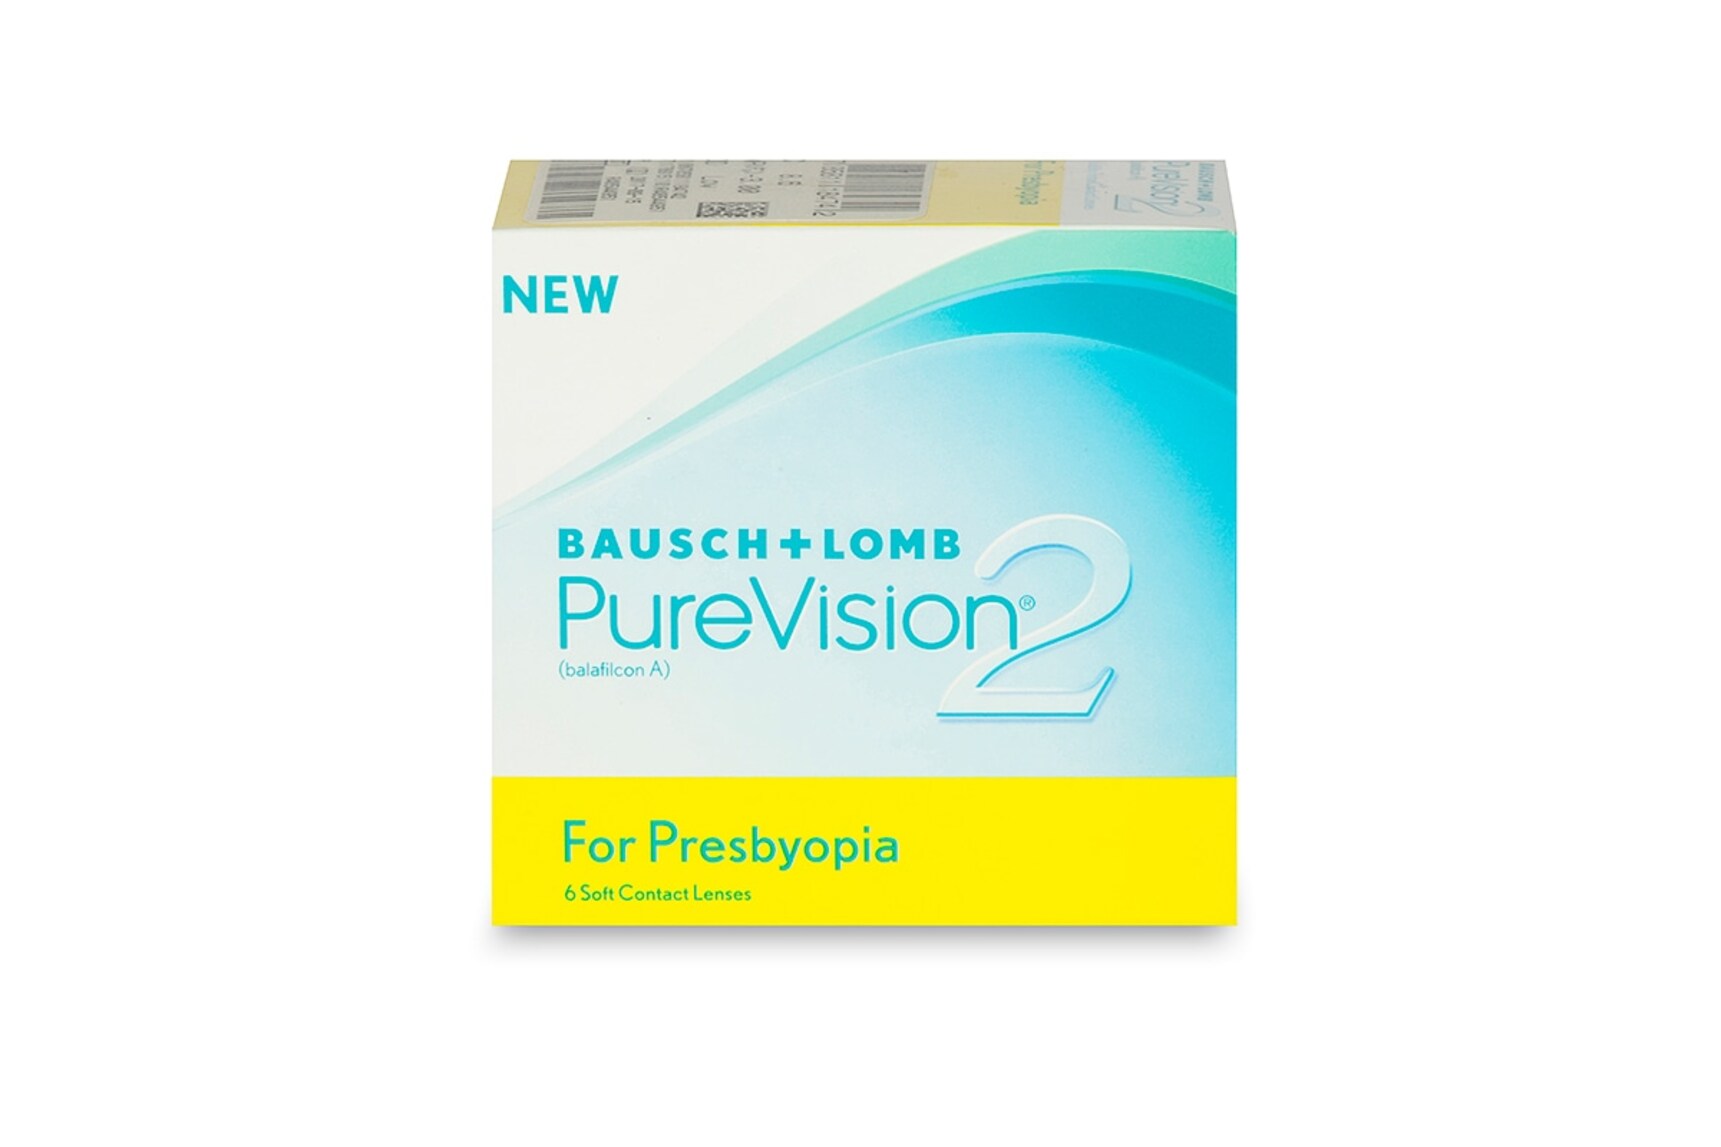 Pure Vision 2 for Presbyopia